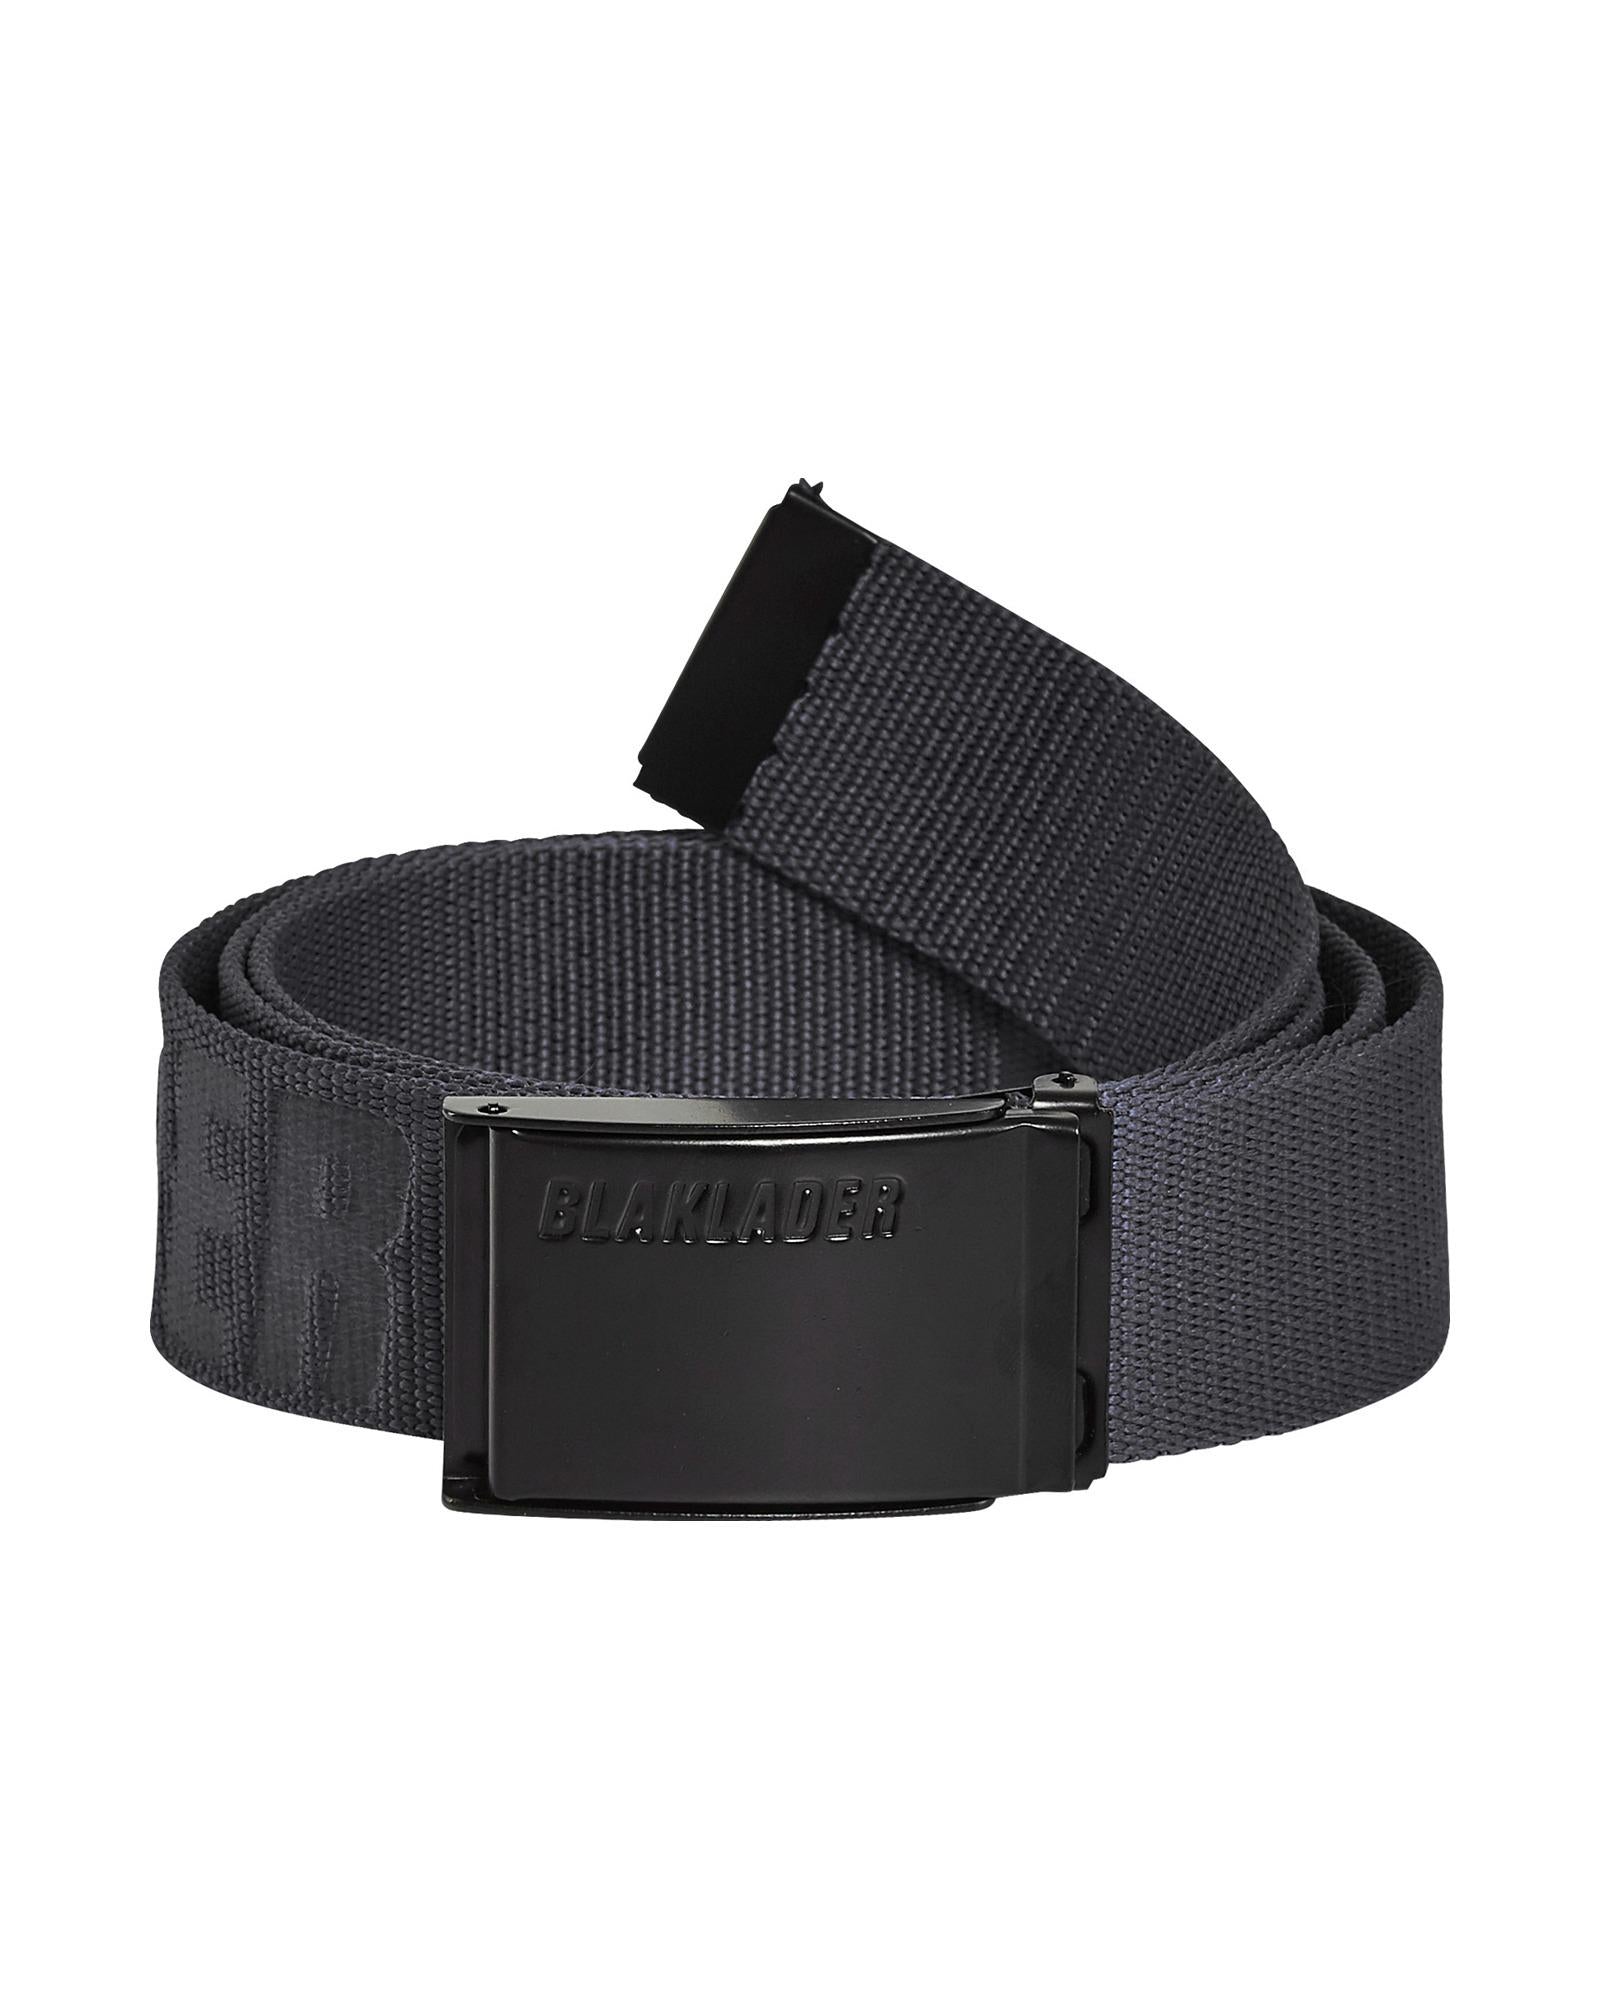 Blaklader anthracite grey textile adjustable belt with metal buckle #4034